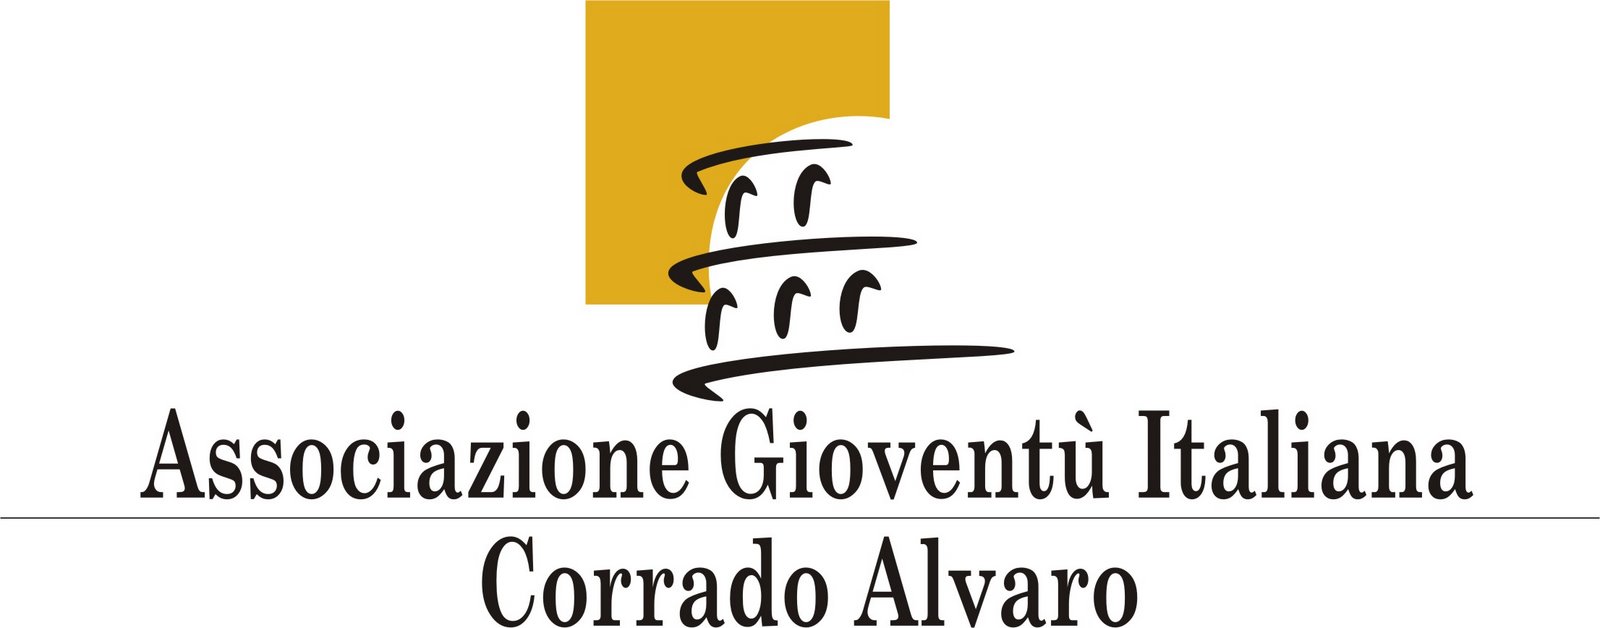 Associazione Gioventù Italiana 'Corrado Alvaro' de Ramos Mejía